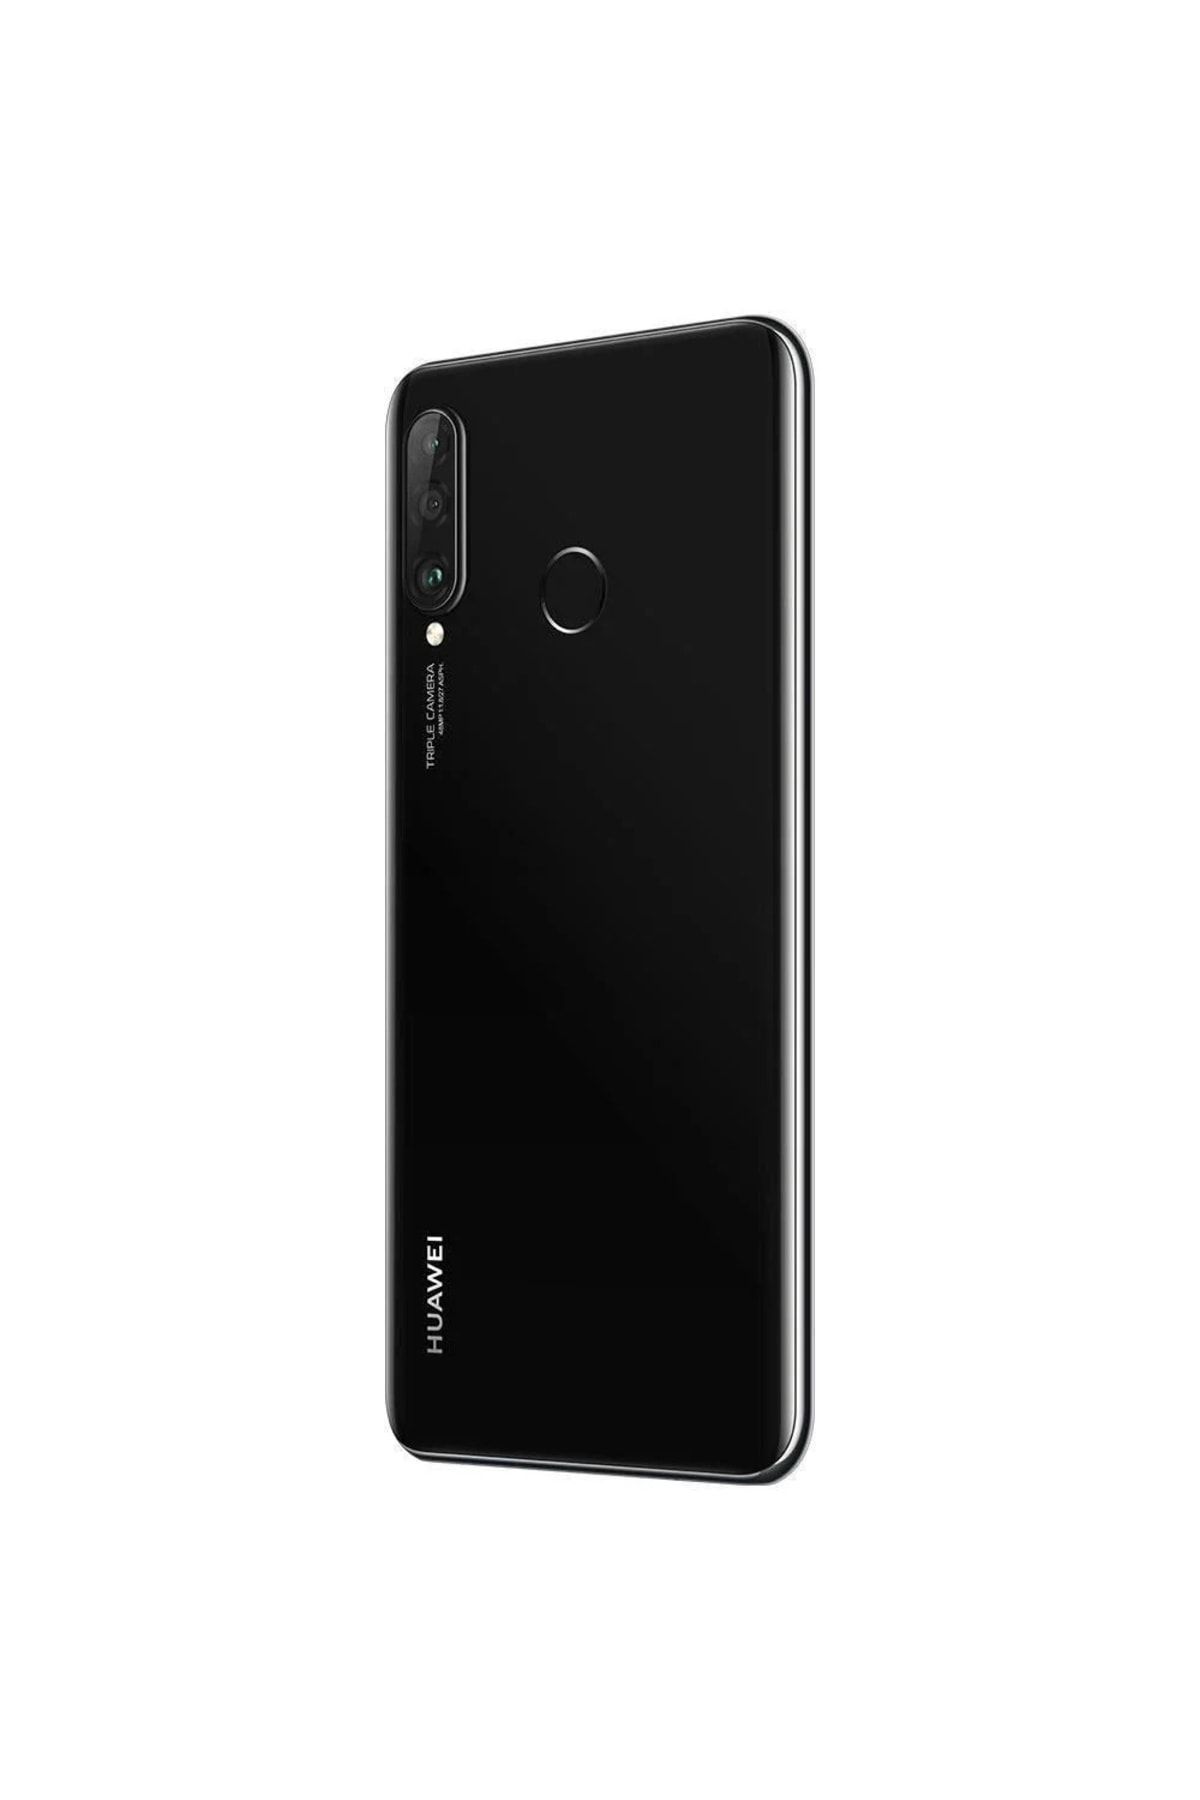 Huawei Yenilenmiş P30 Lite 128 GB Black Cep Telefonu (12 Ay Garantili) - B Kalite